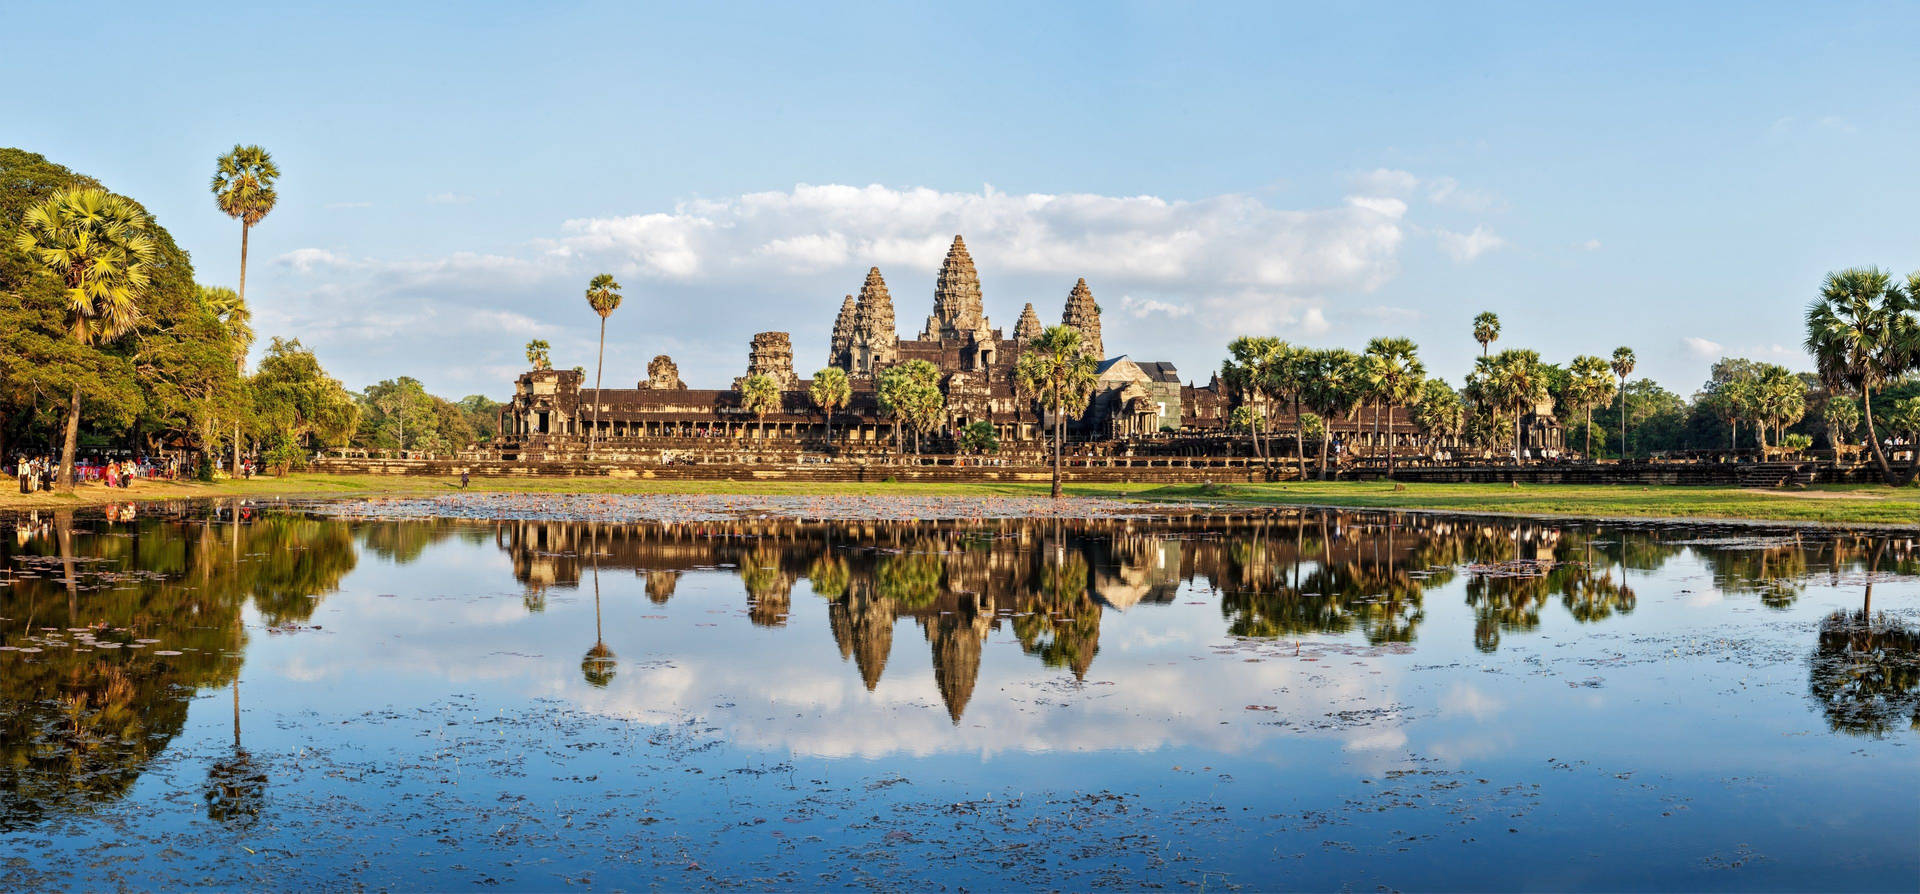 Angkorwat Unter Blauem Himmel, Im Wasser Reflektiert. Wallpaper